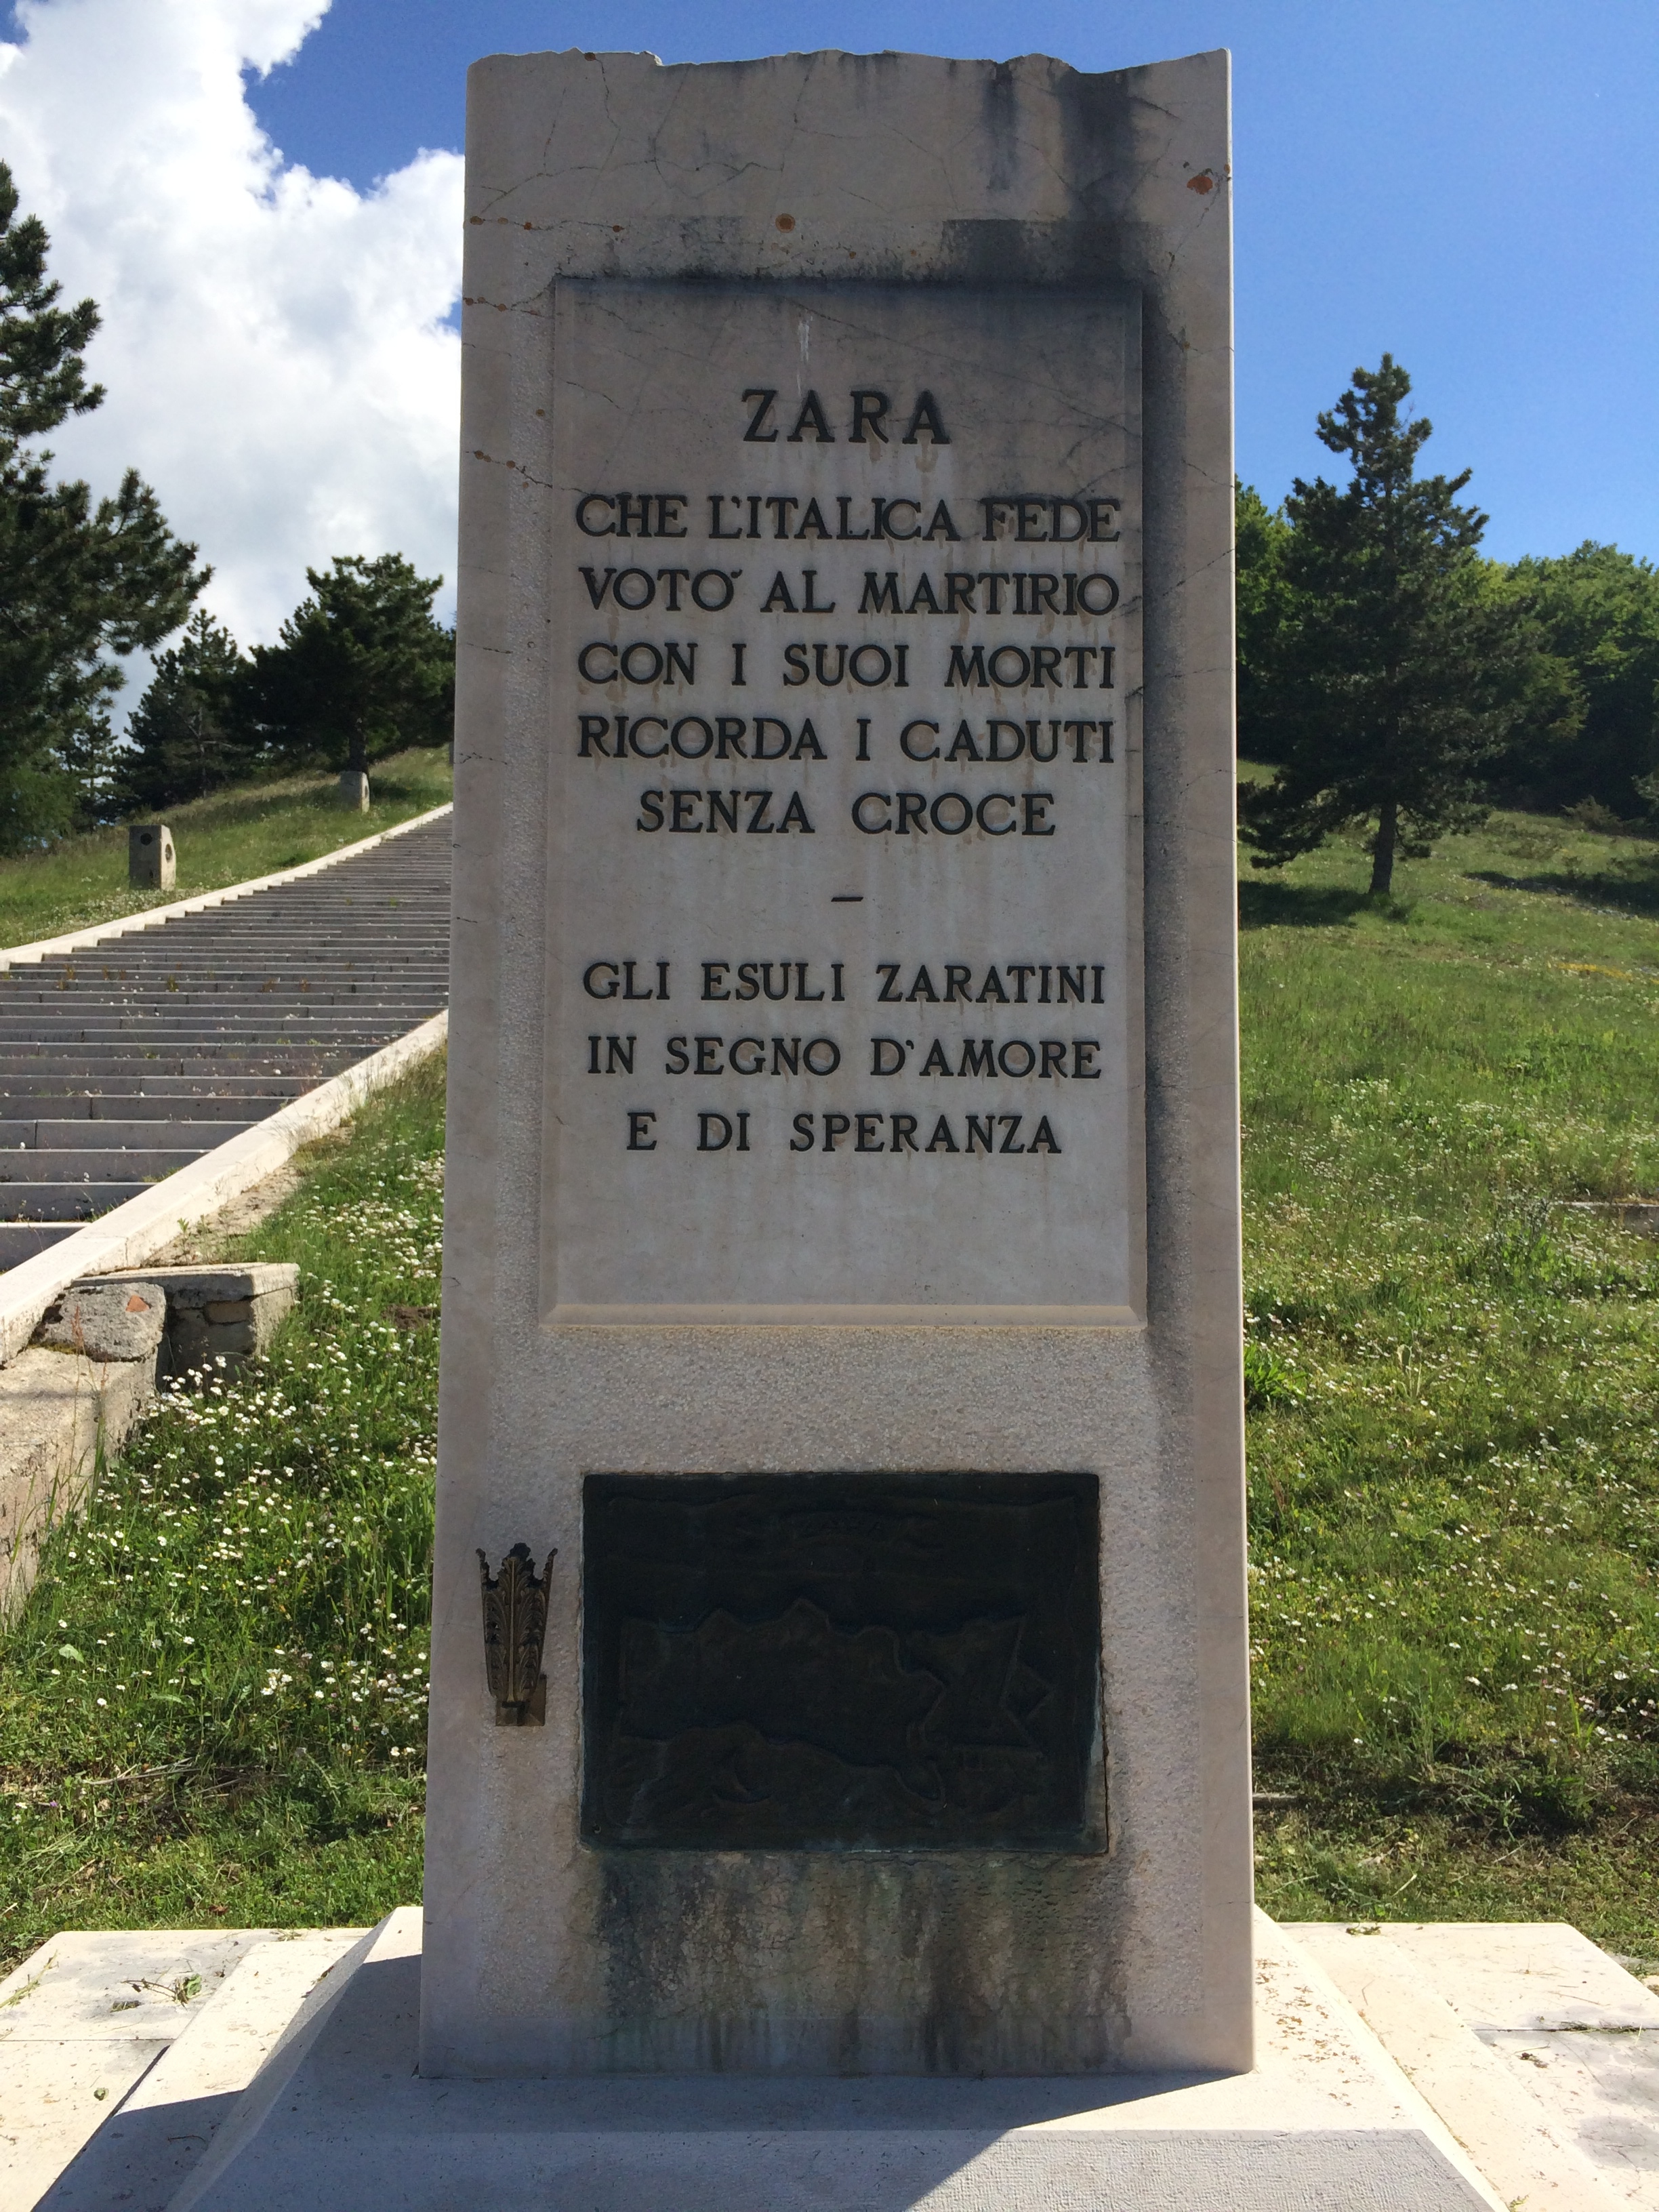 monumento ai caduti - ambito abruzzese (seconda metà XX sec)